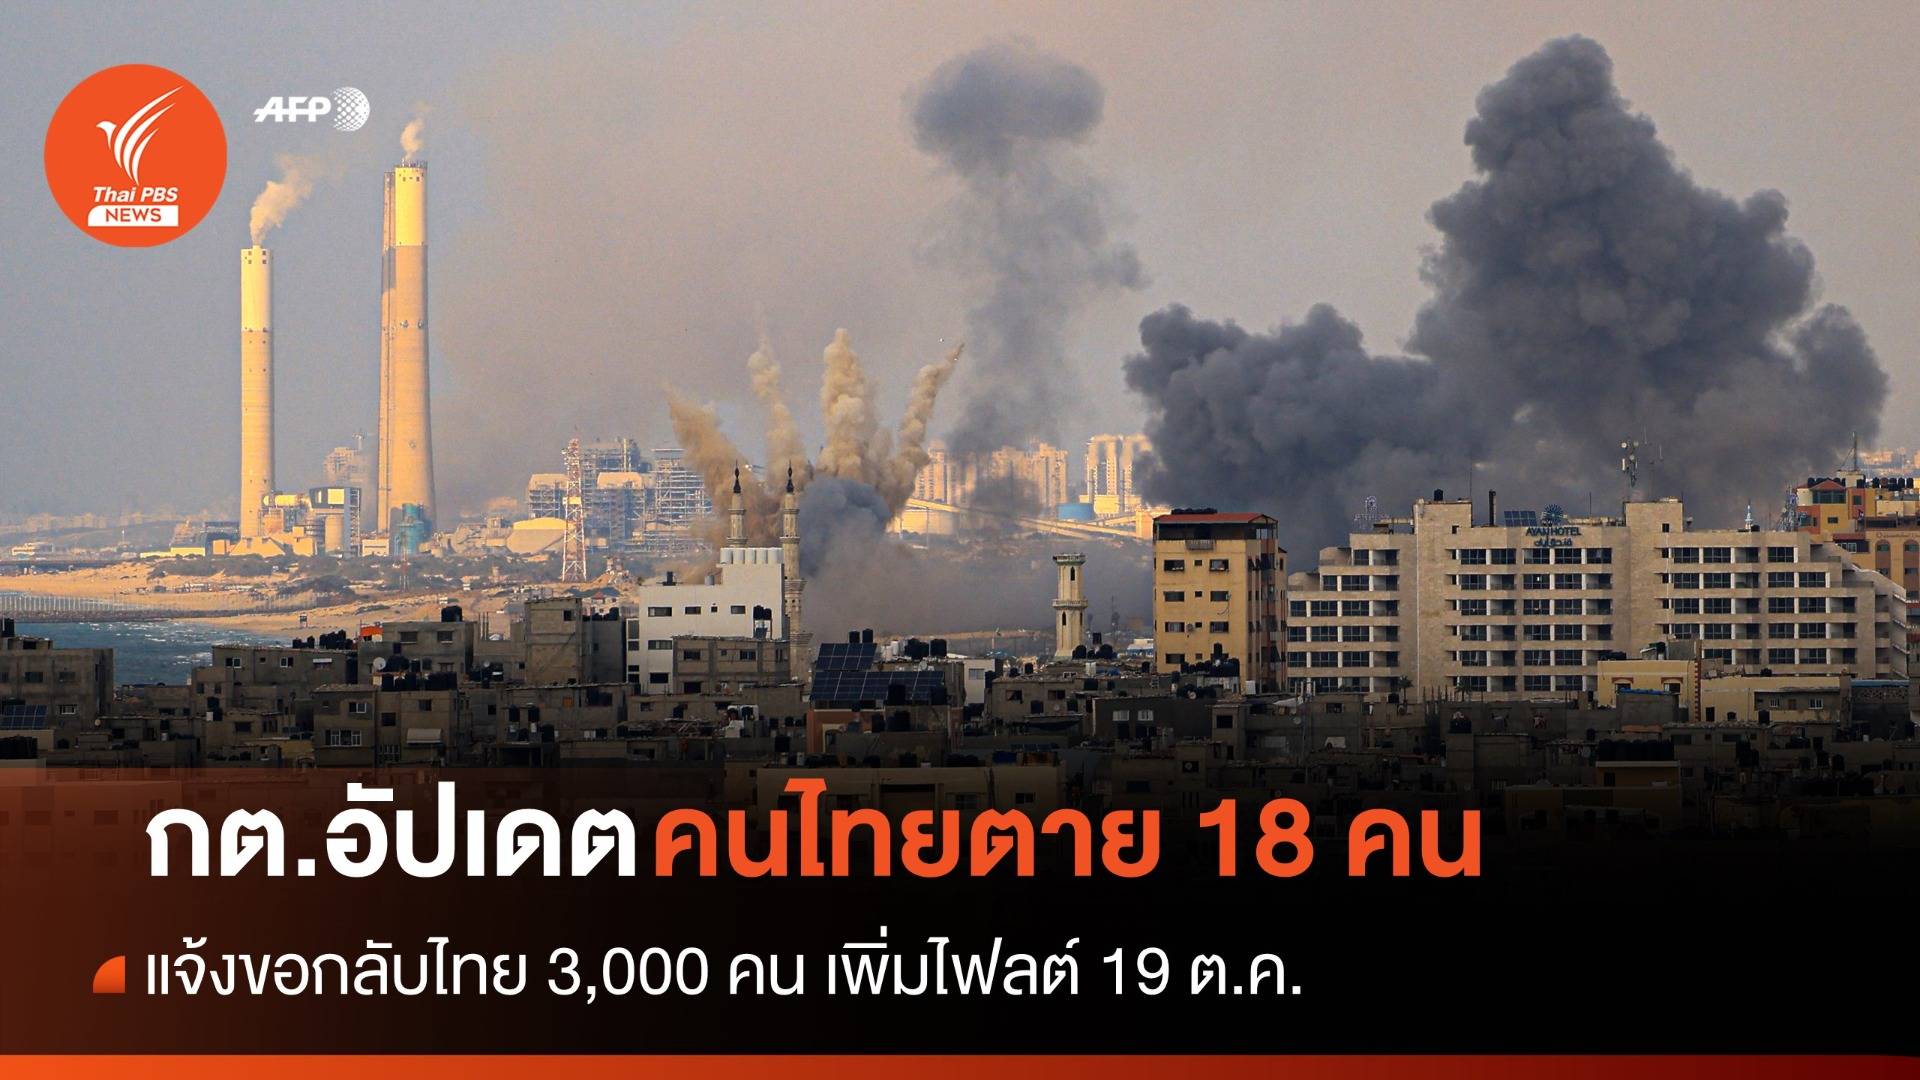 กต.เผย "แรงงานไทย" ในอิสราเอล ตาย 18 คน แจ้งขอกลับ 3,000 คน